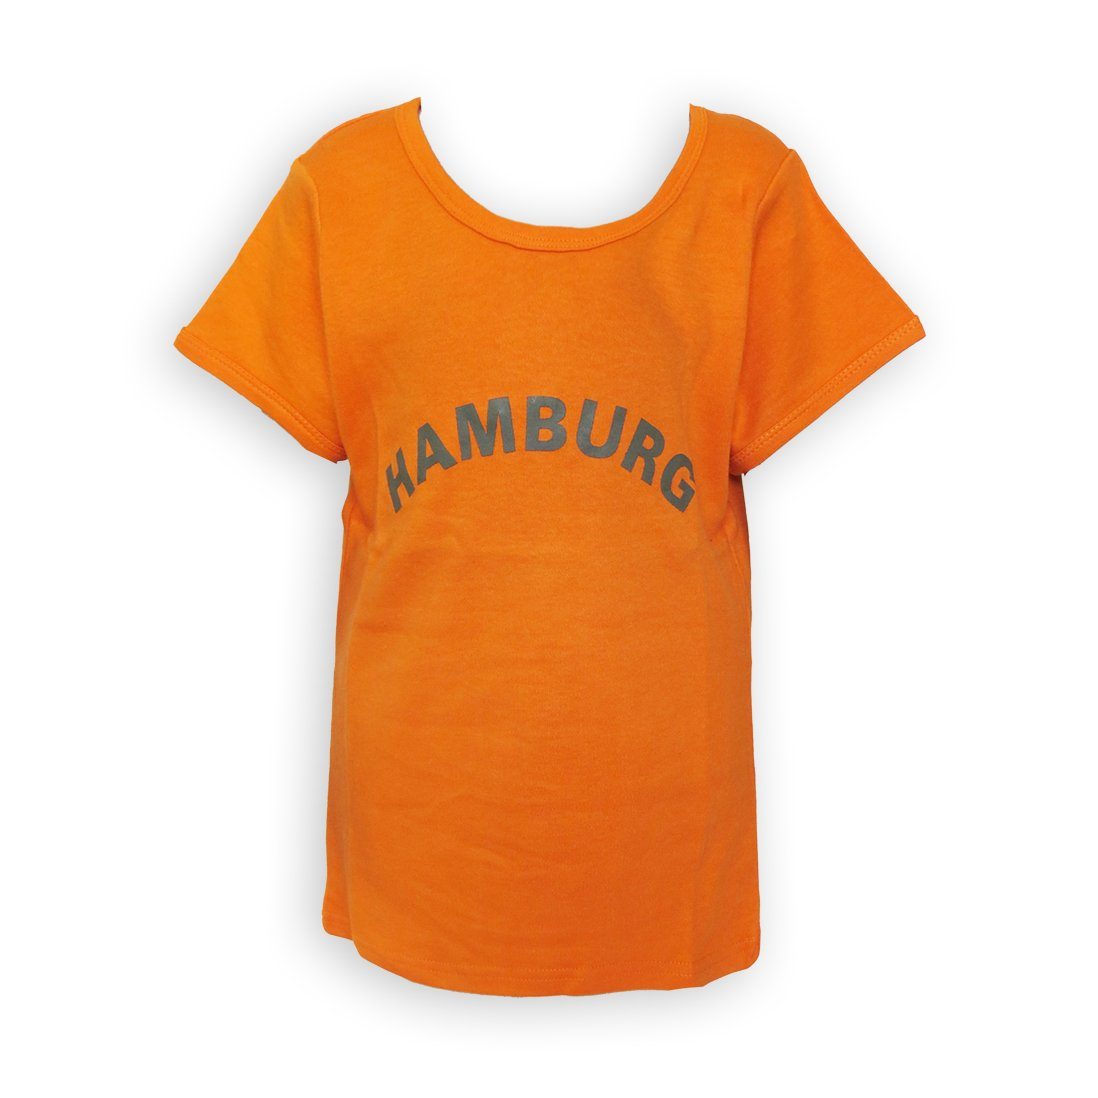 Sonia Originelli T-Shirt Shirt Top für Mädchen Teens mit Hamburg Aufdruck orange